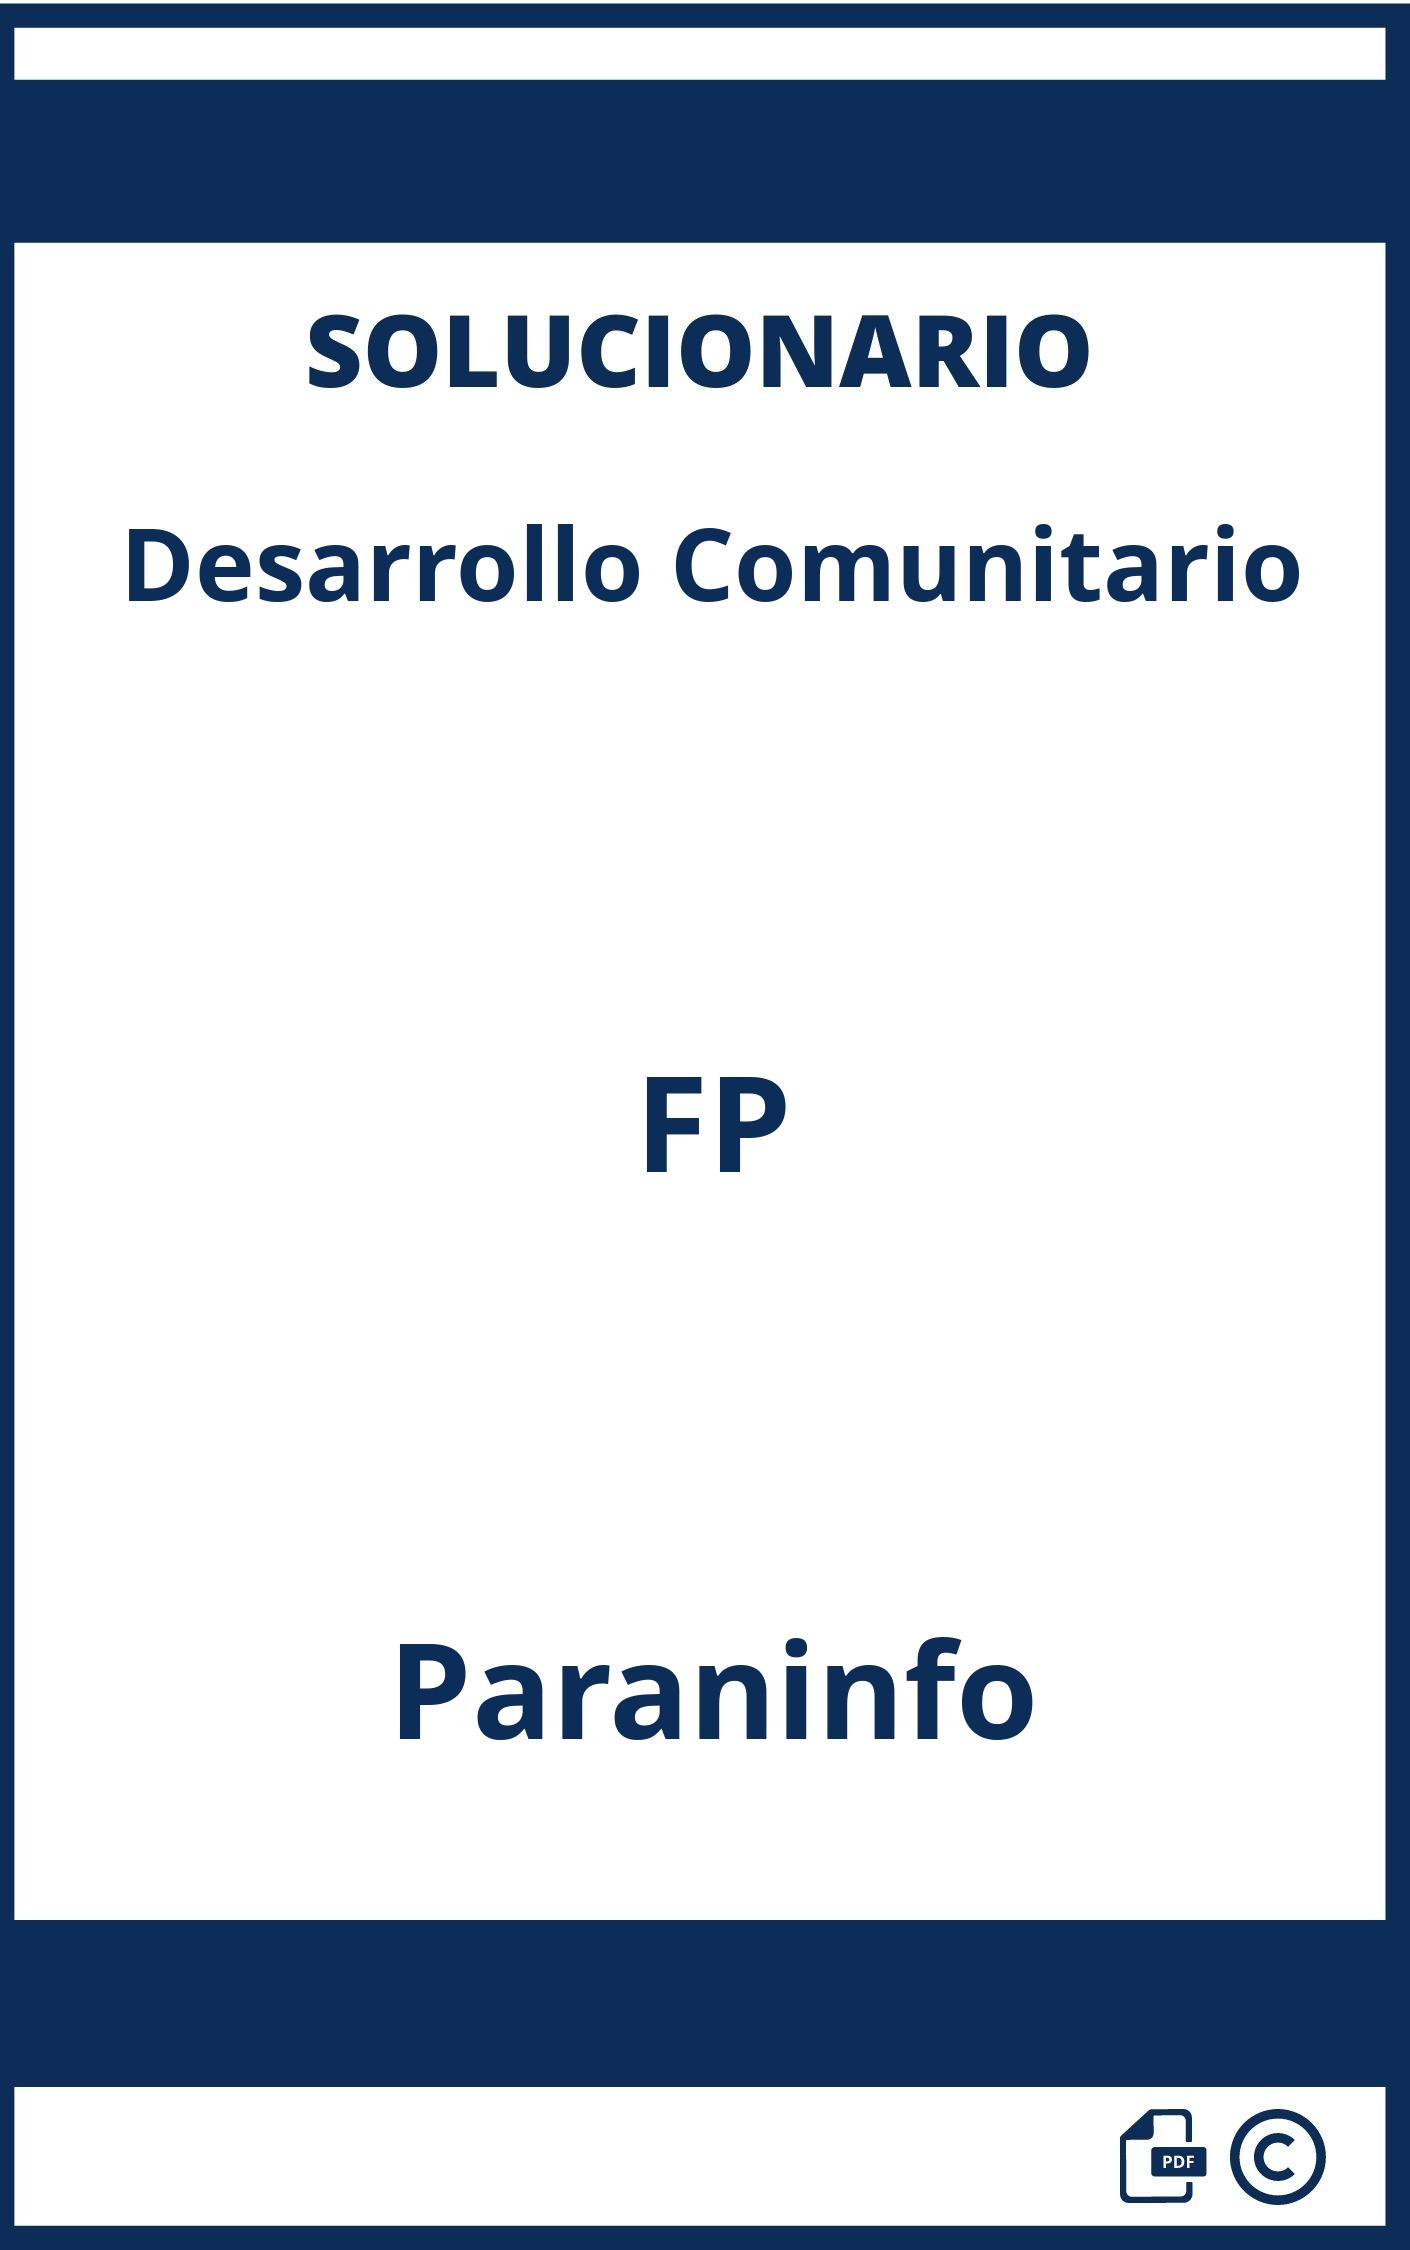 Solucionario Desarrollo Comunitario FP Paraninfo